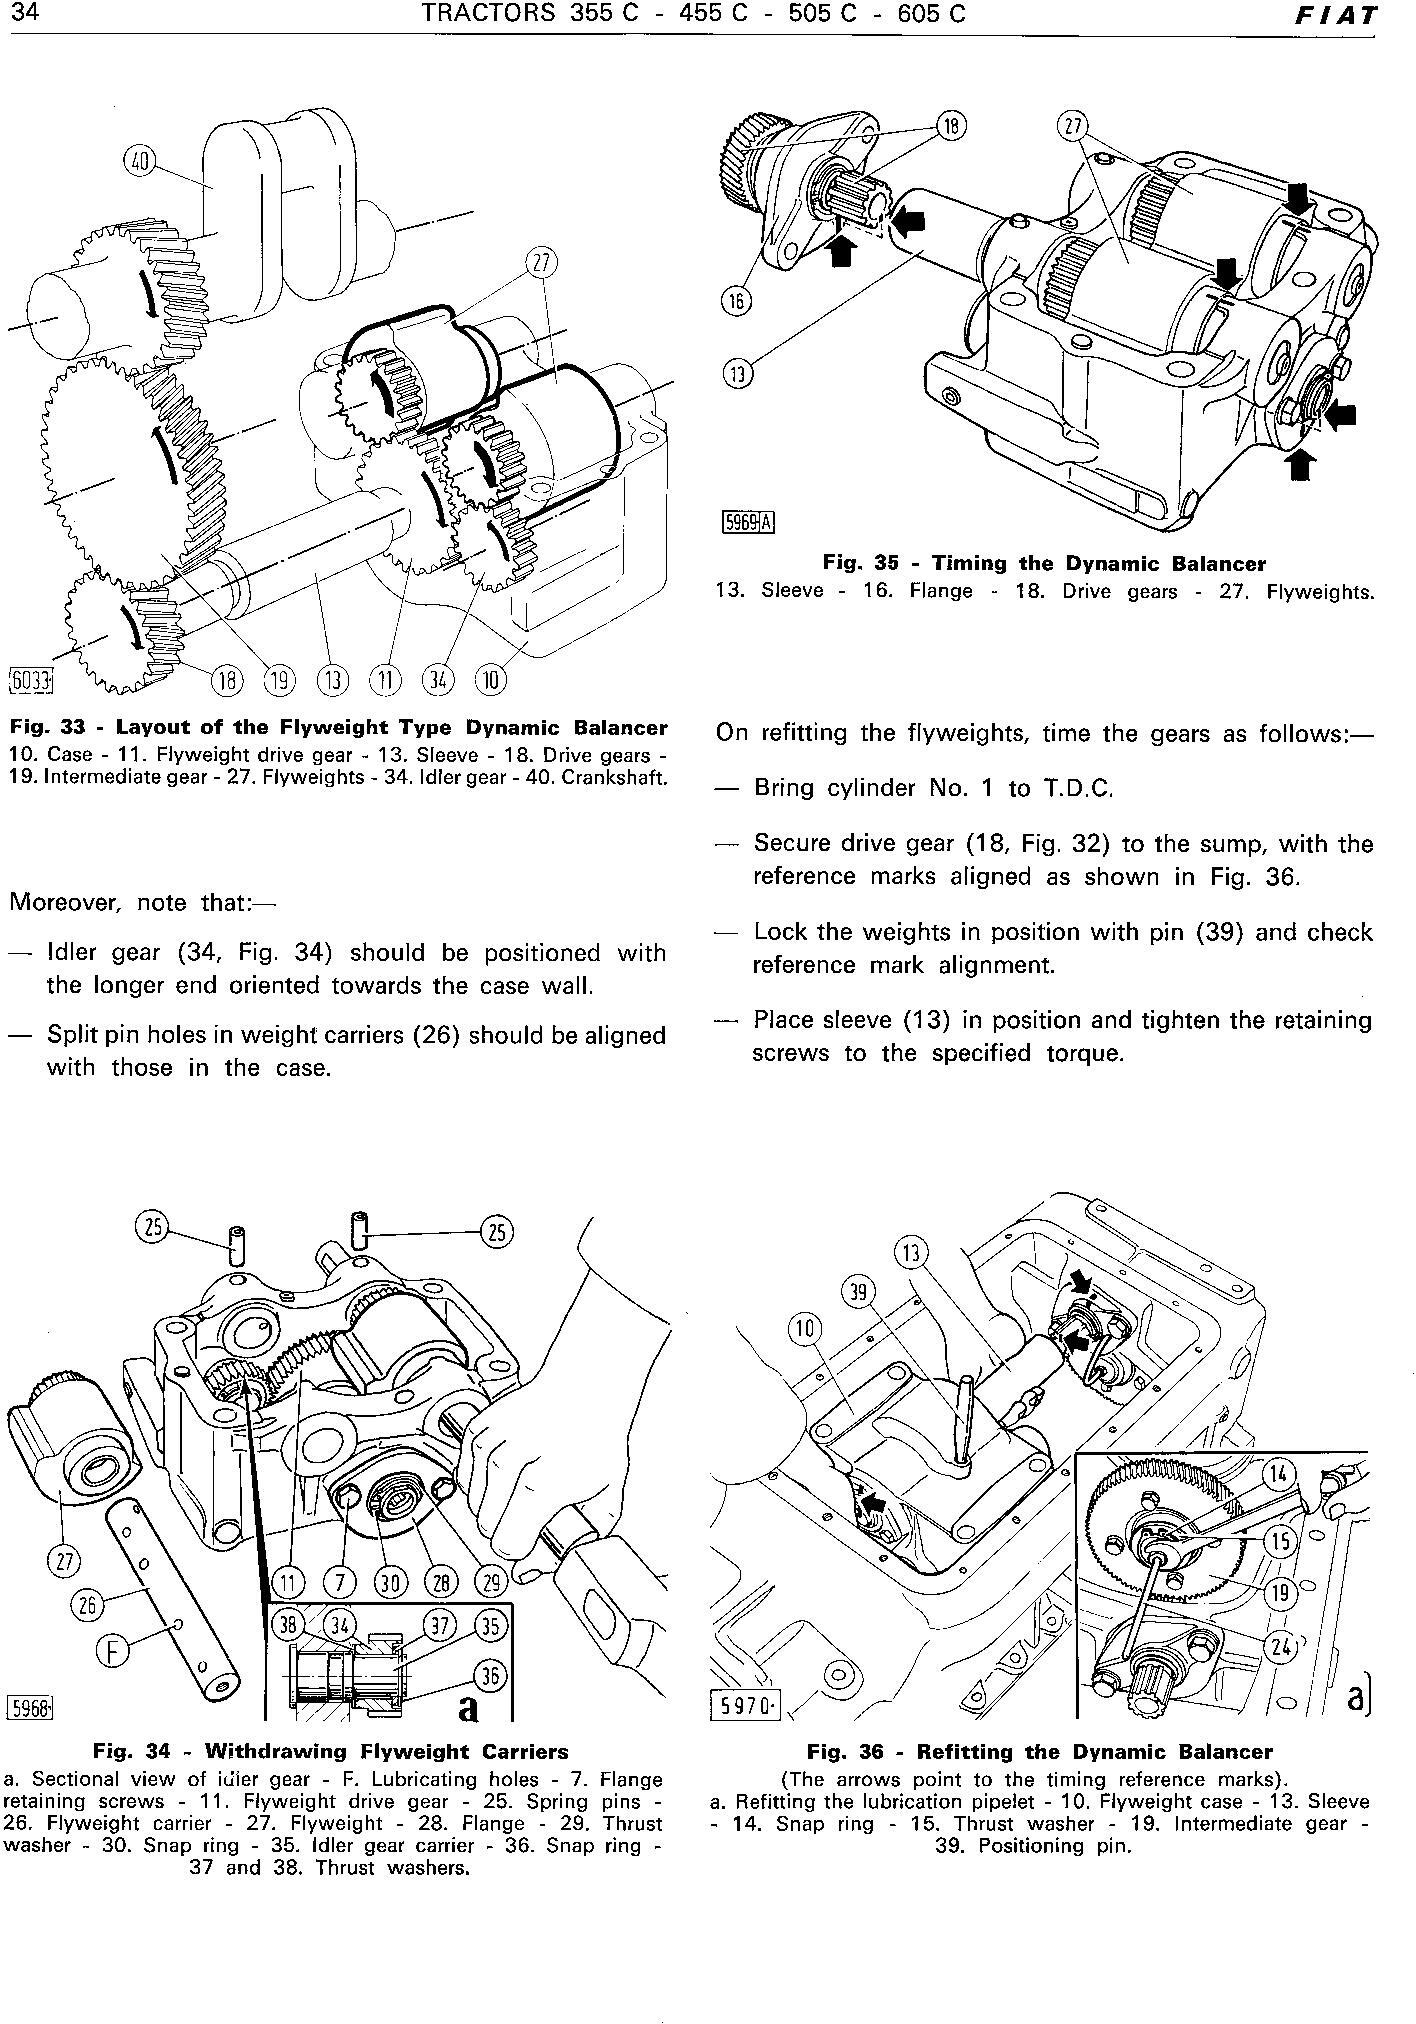 Fiat 355C, 455C, 505C, 605C Crawler Tractor Workshop Service Manual (6035416200) - 2